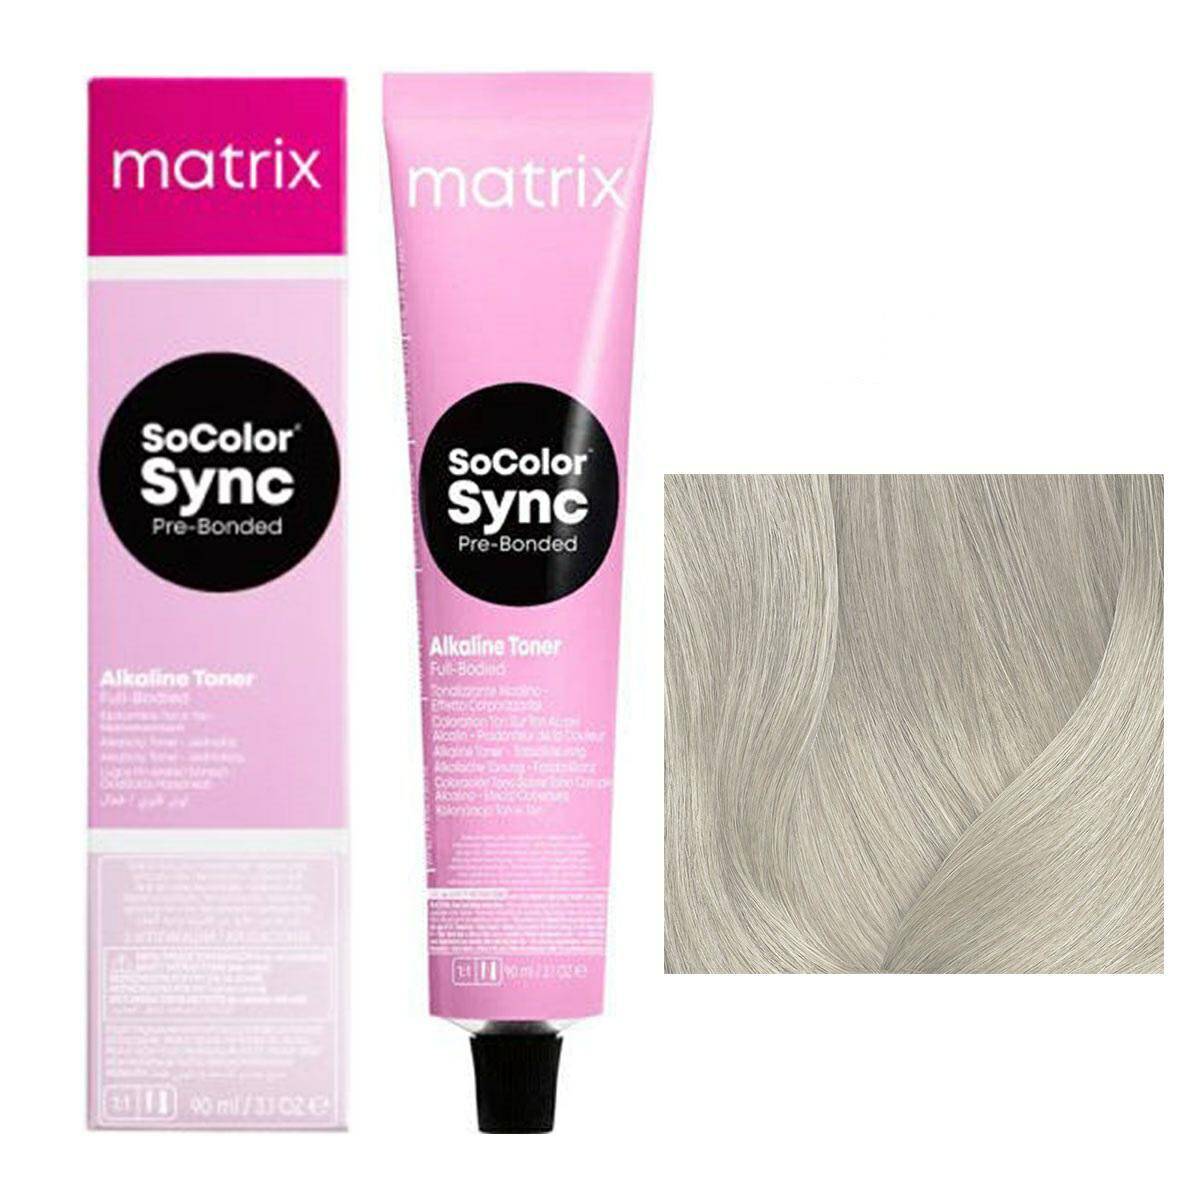 Matrix SoColor Sync Pre-Bonded Farba do włosów - 11A Super jasny blond popielaty, półtrwała koloryzacja ton w ton 90ml